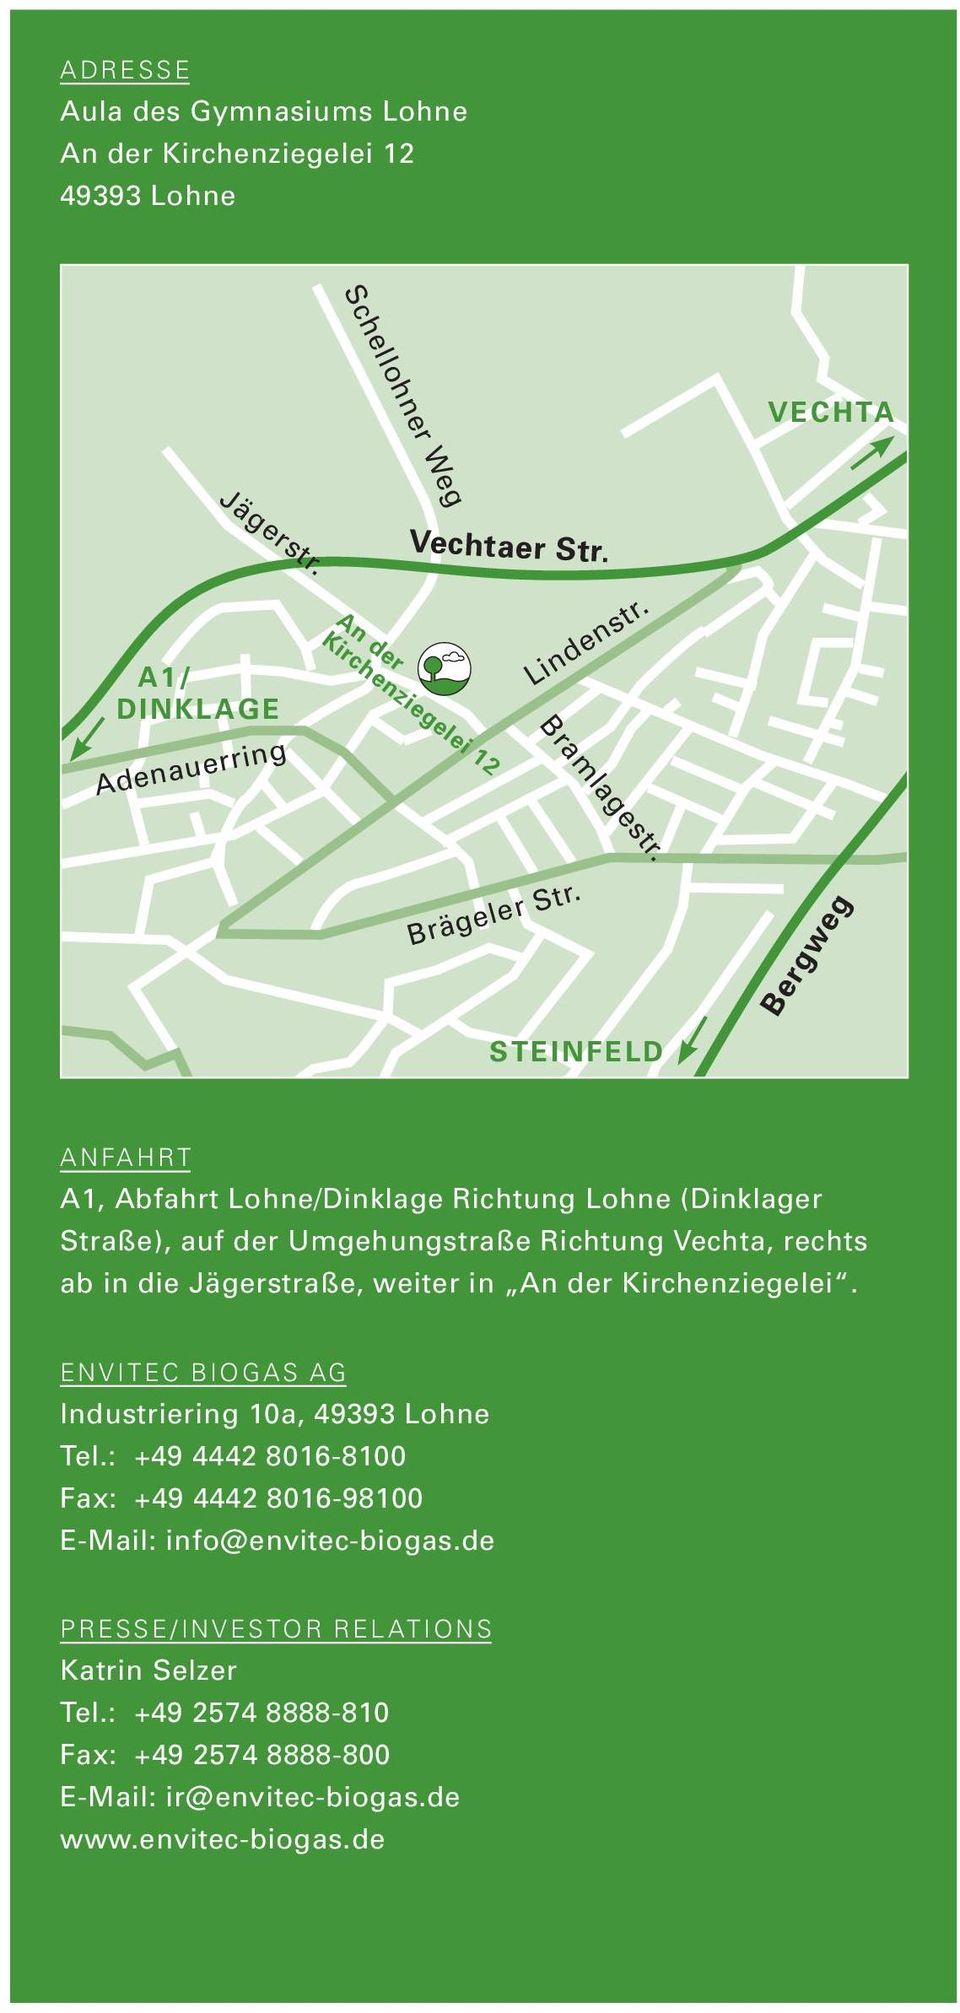 STEINFELD Bergweg Anfahrt A1, Abfahrt Lohne/Dinklage Richtung Lohne (Dinklager Straße), auf der Umgehungstraße Richtung Vechta, rechts ab in die